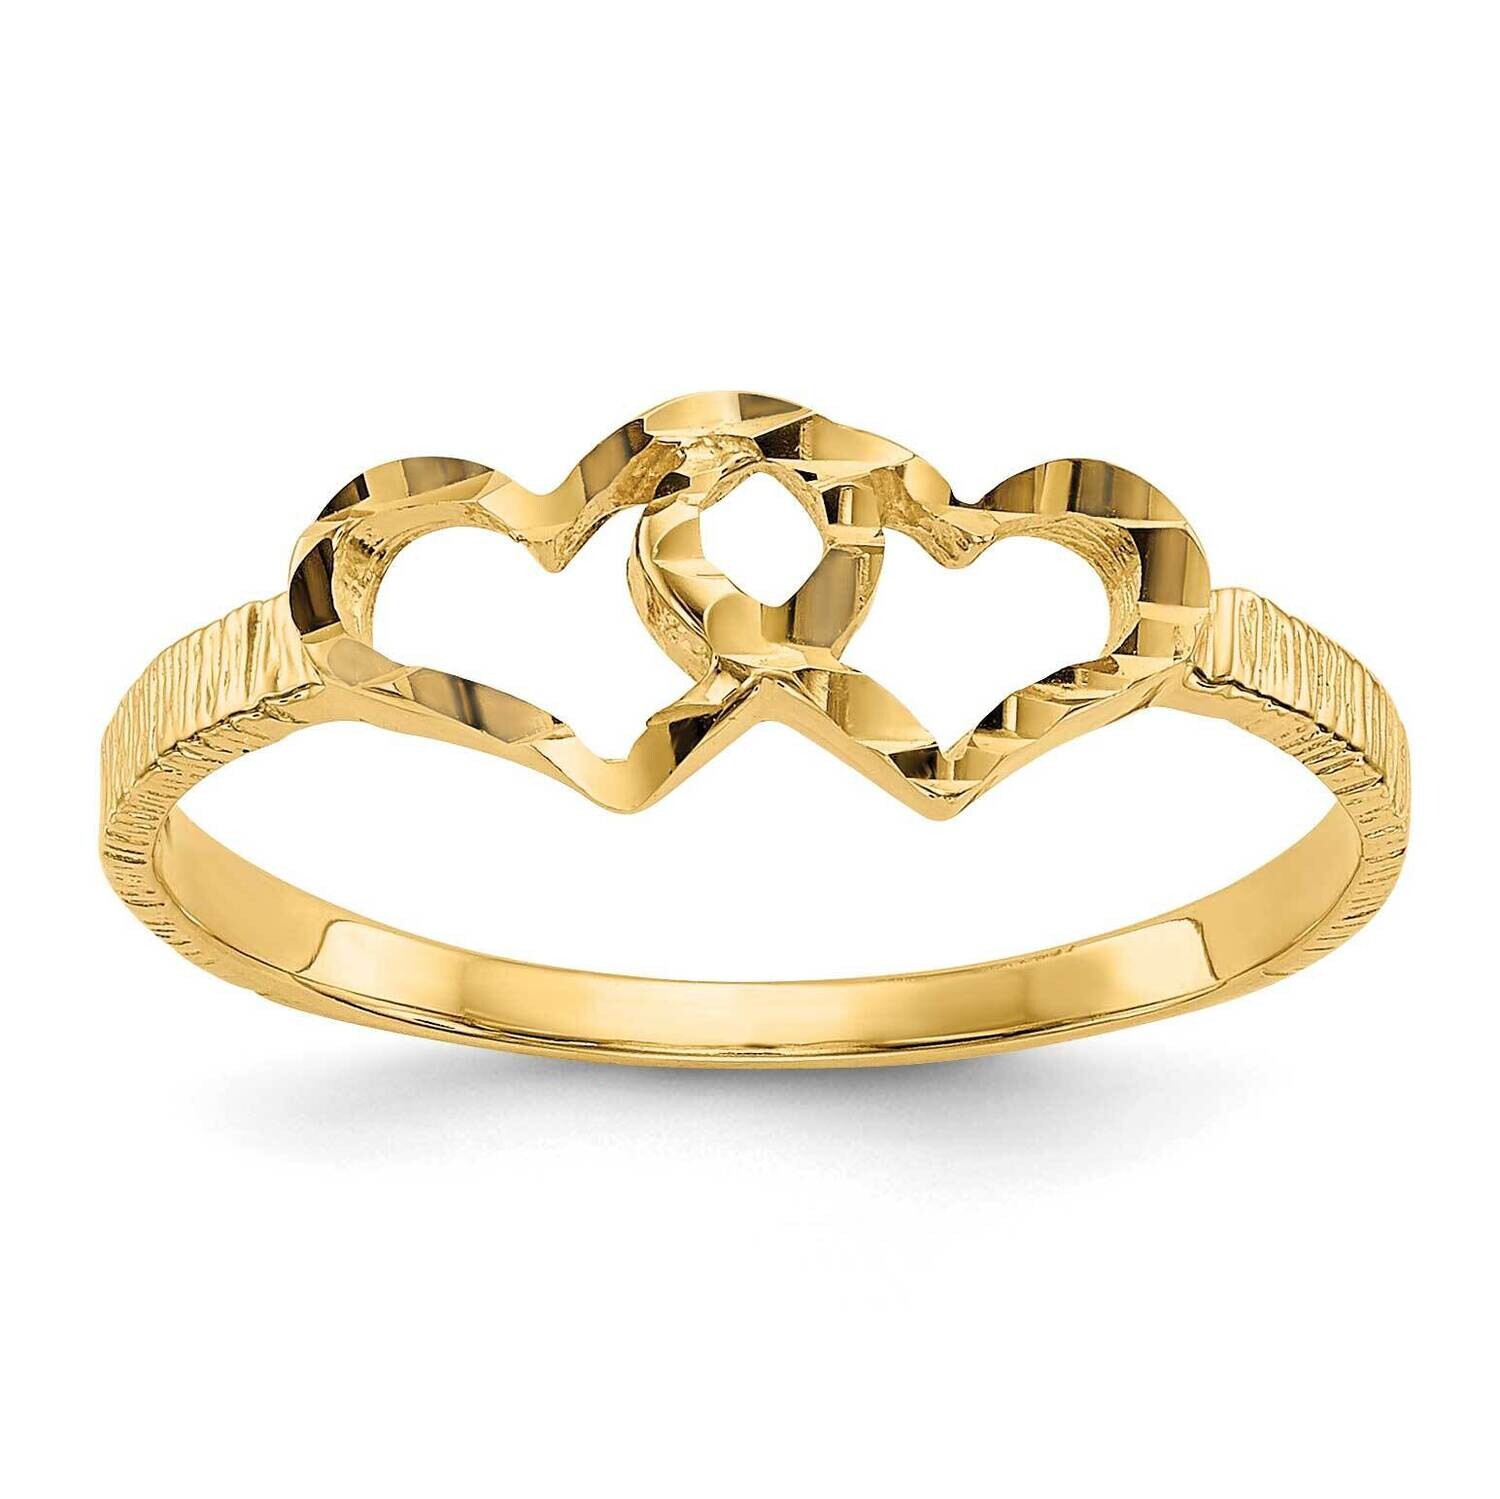 Children's Heart Ring 10k Gold 10R199